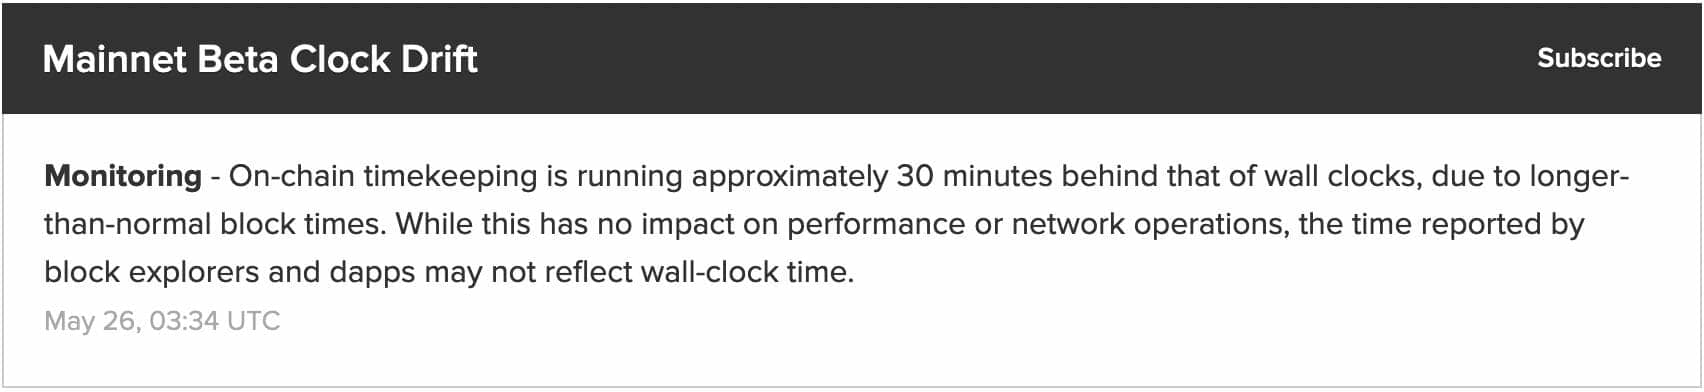 L'horloge de Solana a une demie heure de retard par rapport au temps réel. Et forcément, cela réduit le rendement du staking.